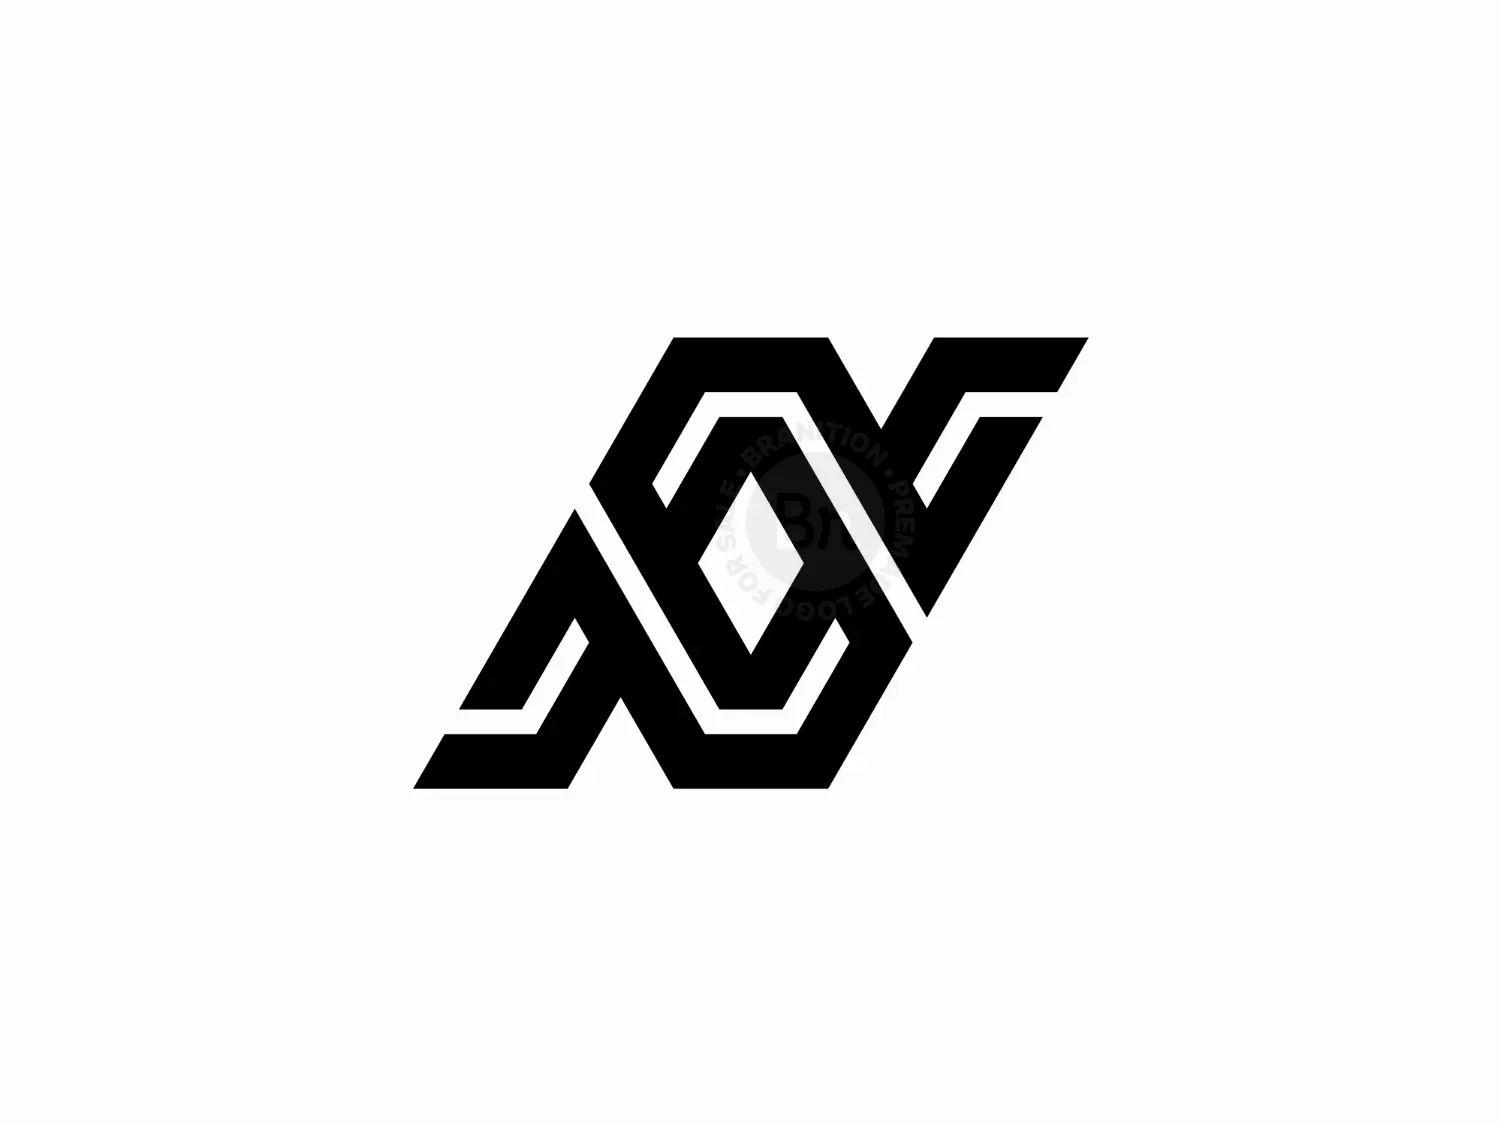 Letter N Or Nn Monogram Logo